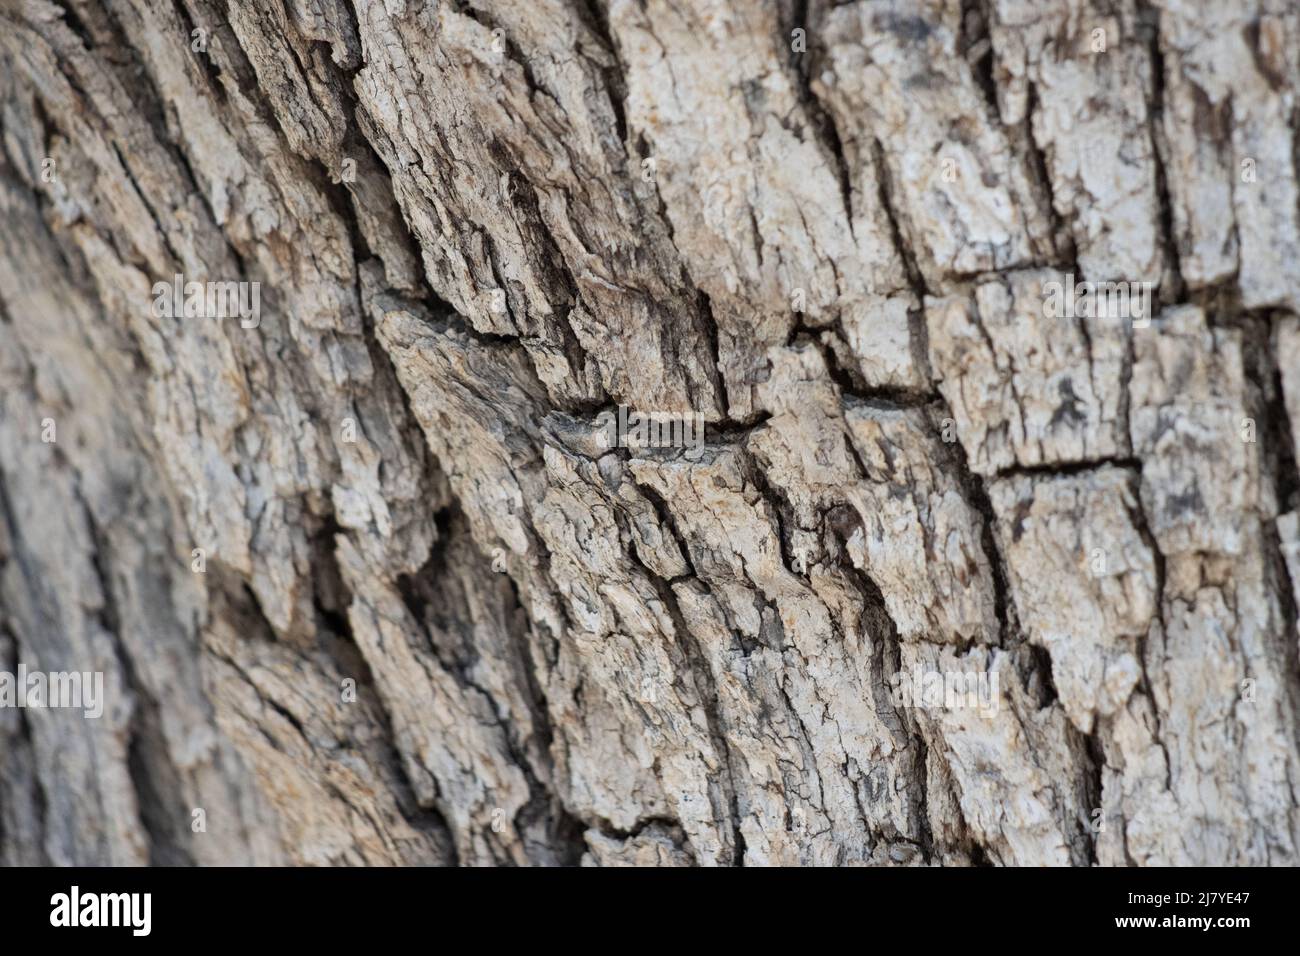 Écorce de crête à sillons gris et écailleux de Quercus Chrysolepis, Fagaceae, arbuste arborescent natif dans les montagnes de San Jacinto, été. Banque D'Images